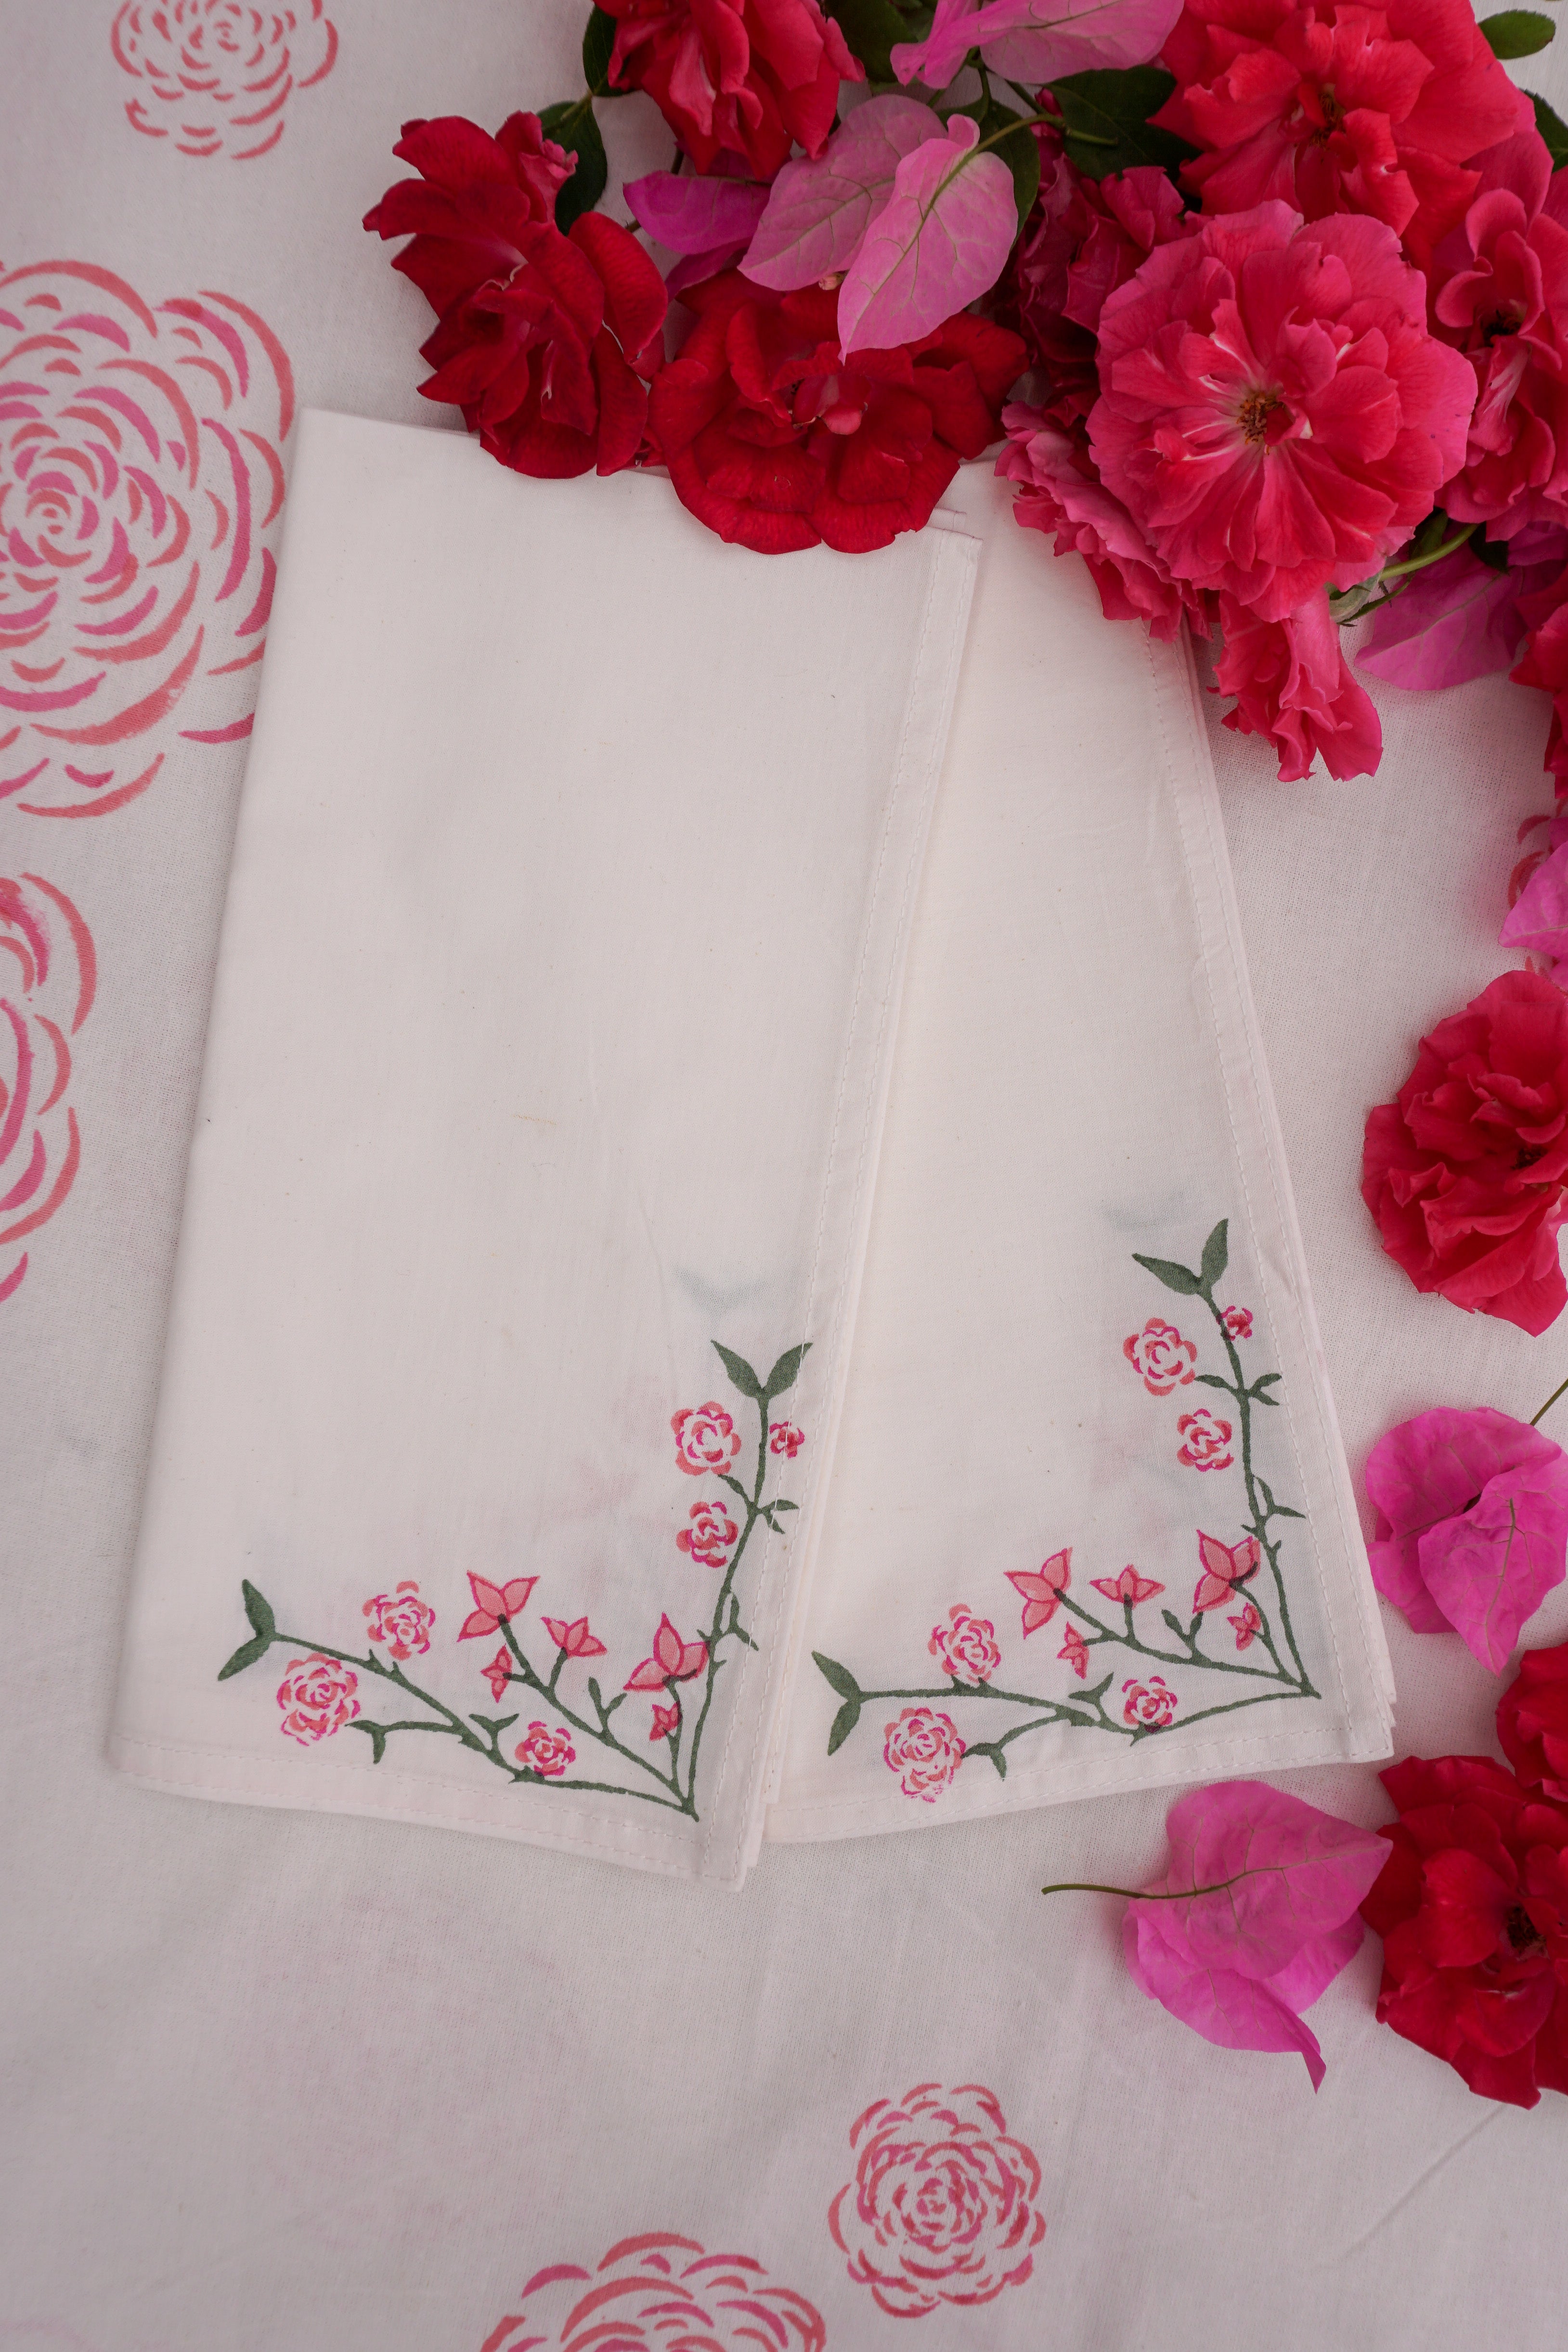 Rosanna Falconer pink napkins block printed